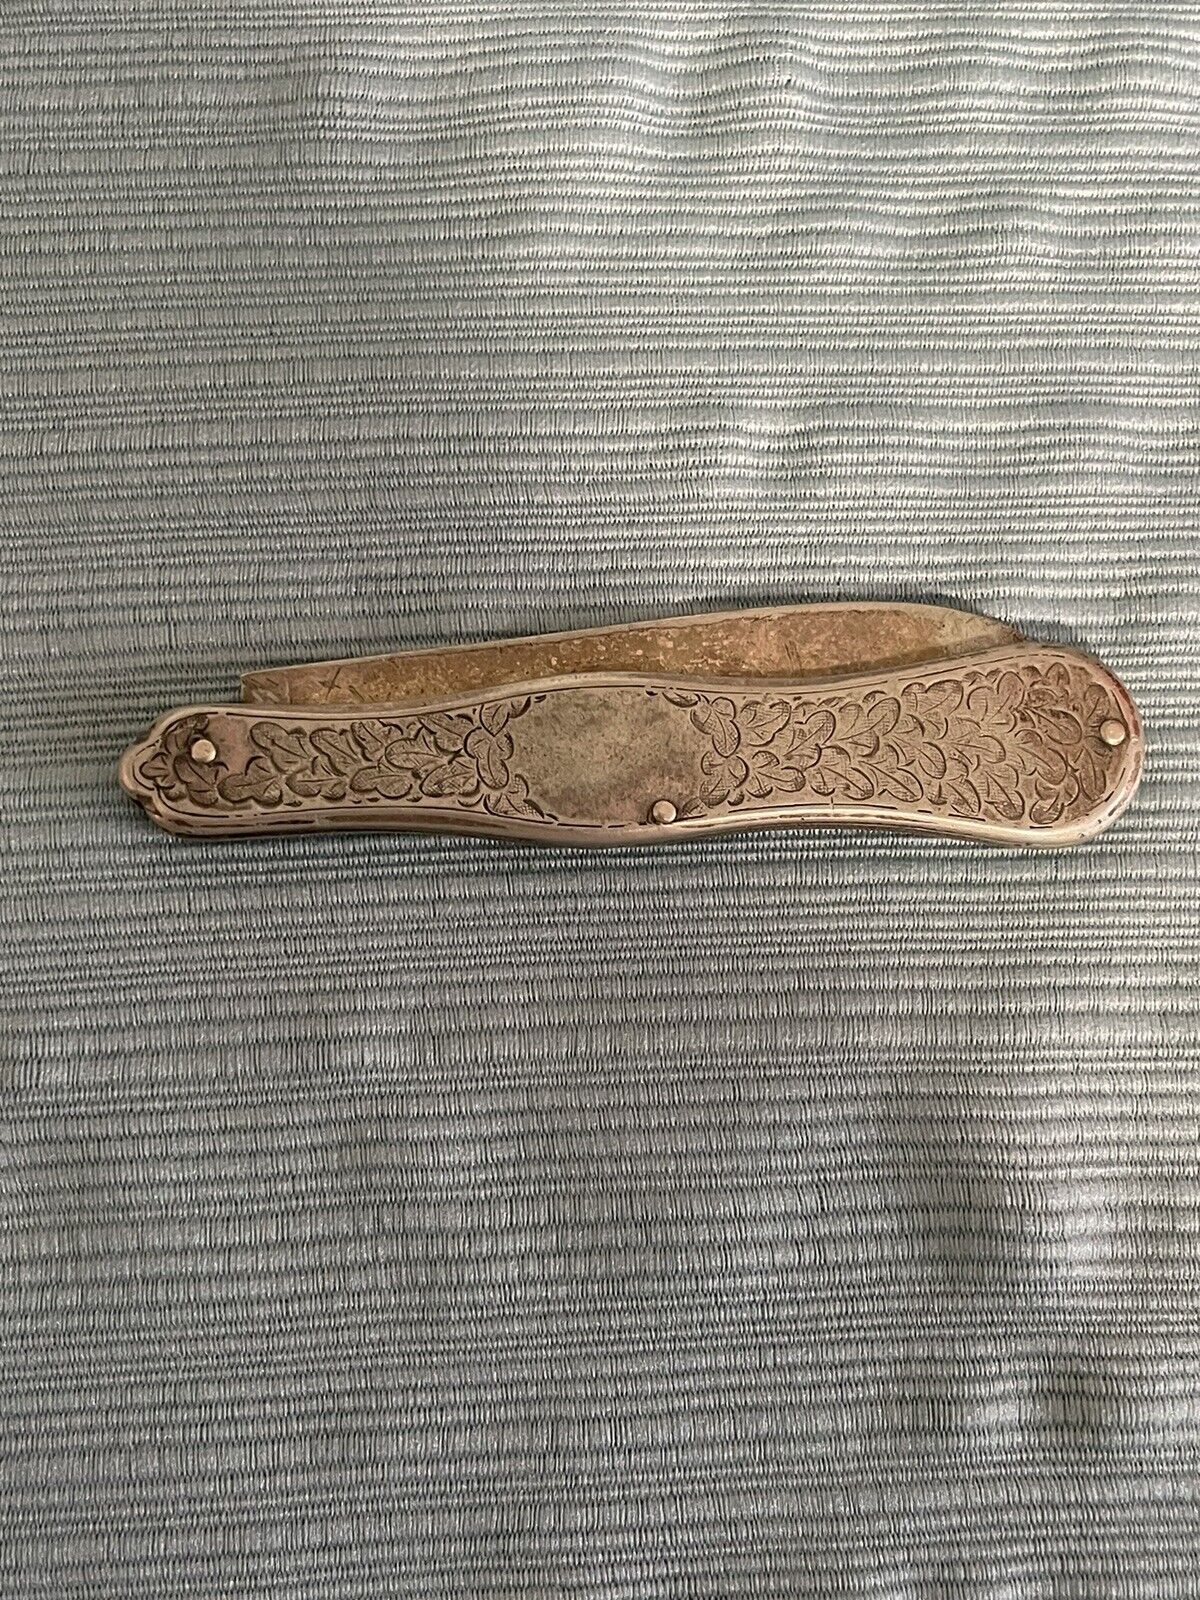 Antique Civil War Era Silver Pocket Knife